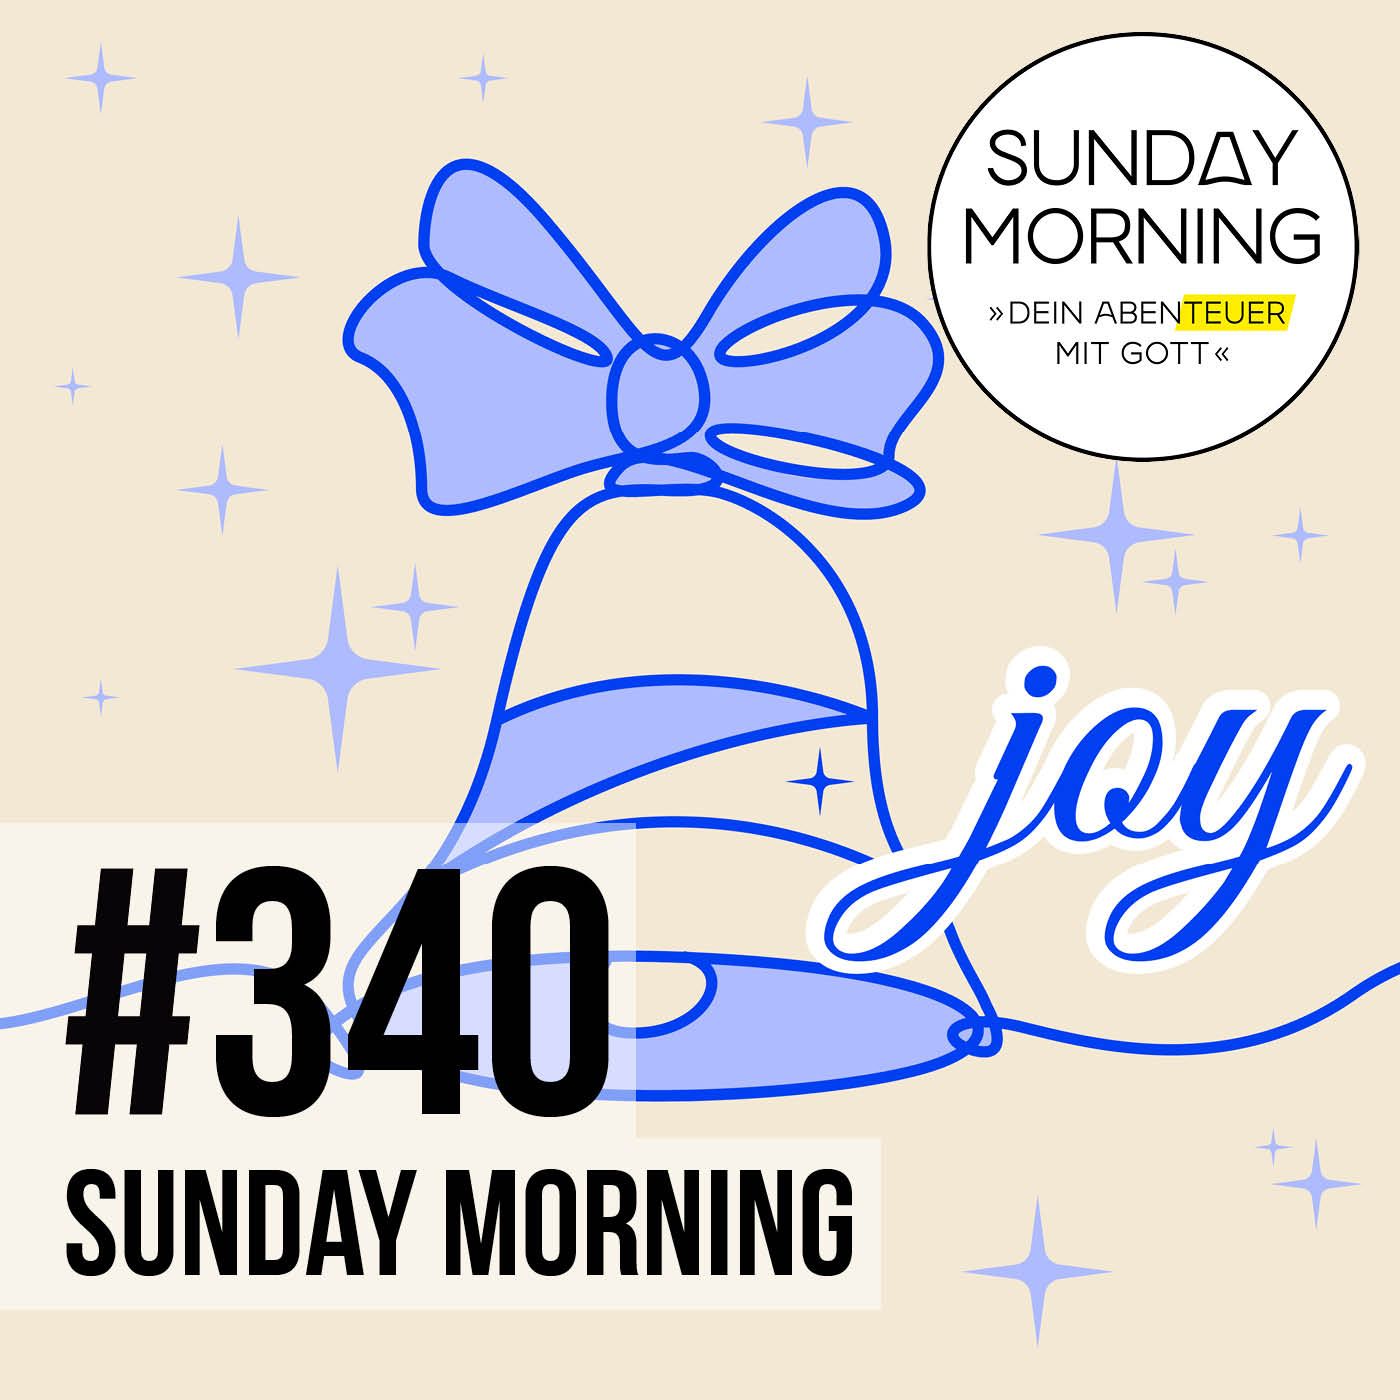 2. ADVENT - waiting for JOY | Sunday Morning #340